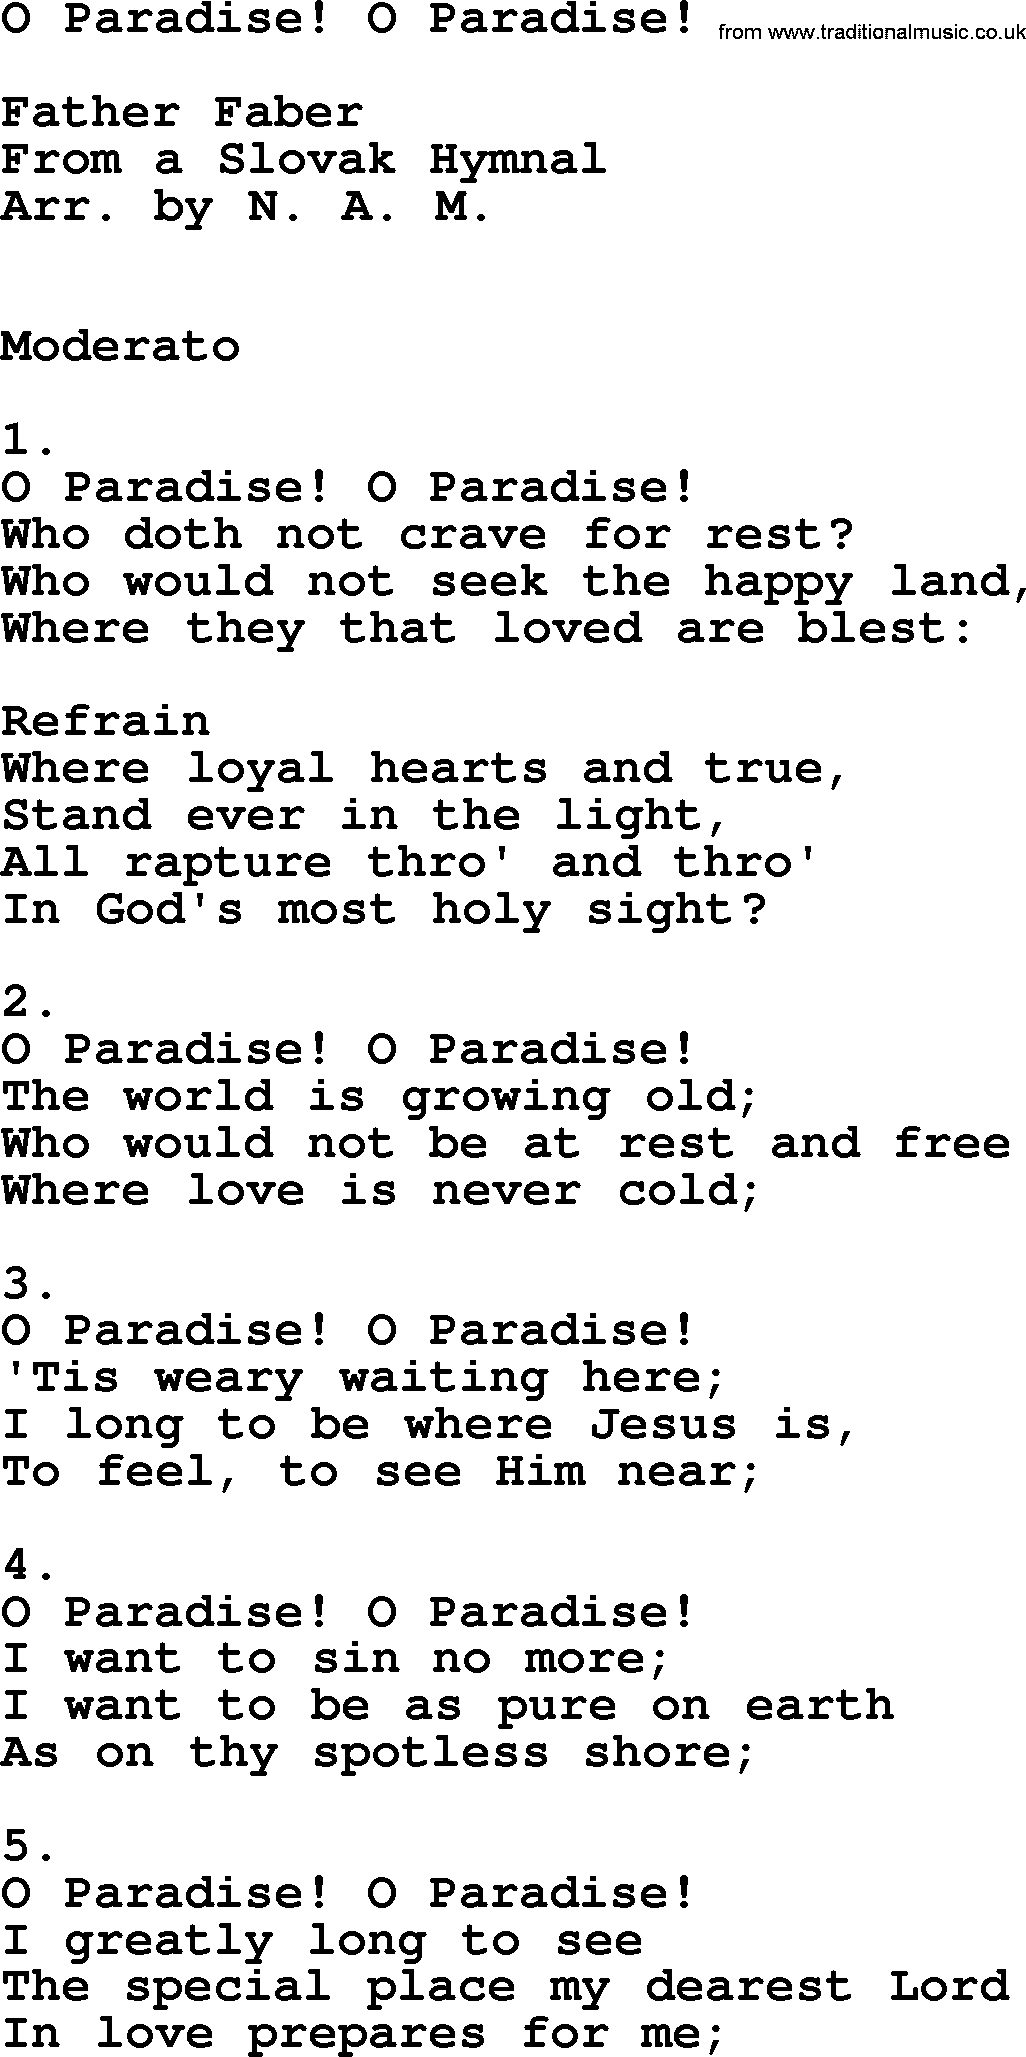 Catholic Hymn: O Paradise! O Paradise! lyrics with PDF